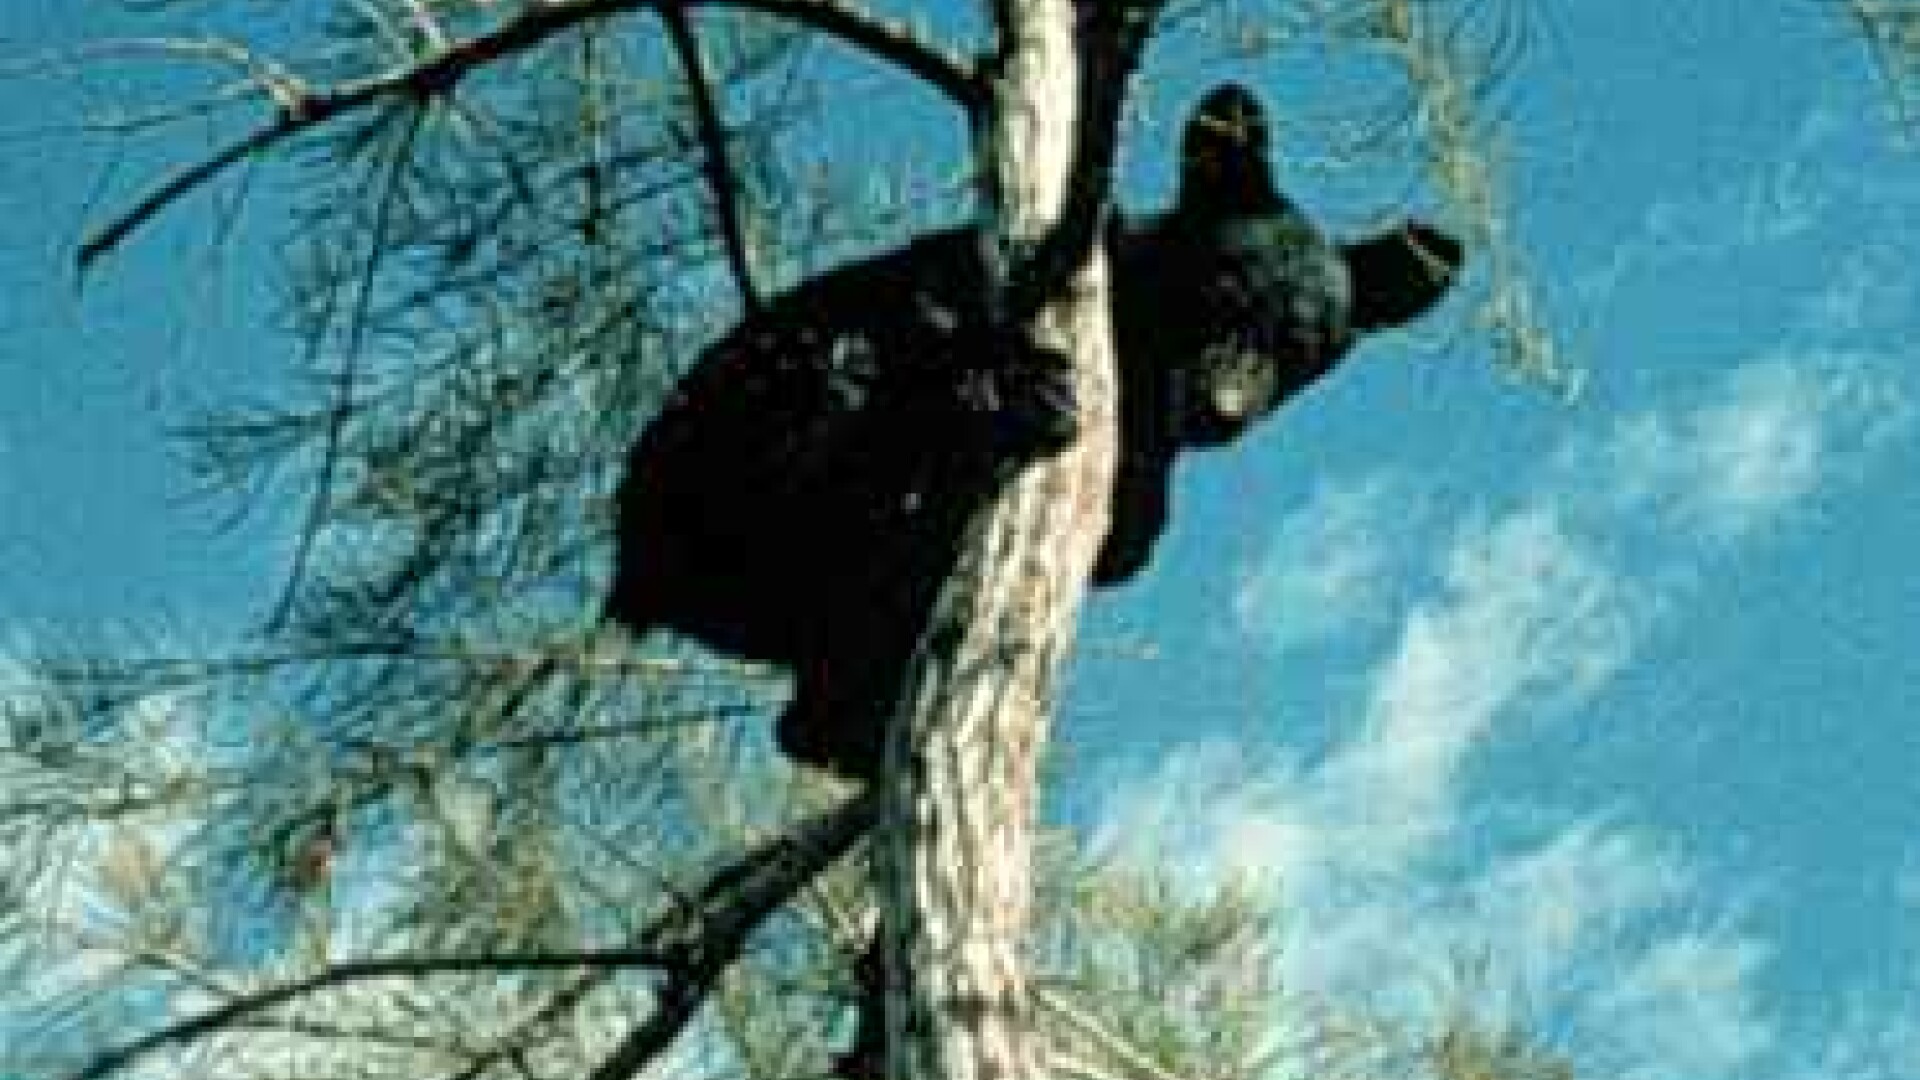 Urs negru in copac